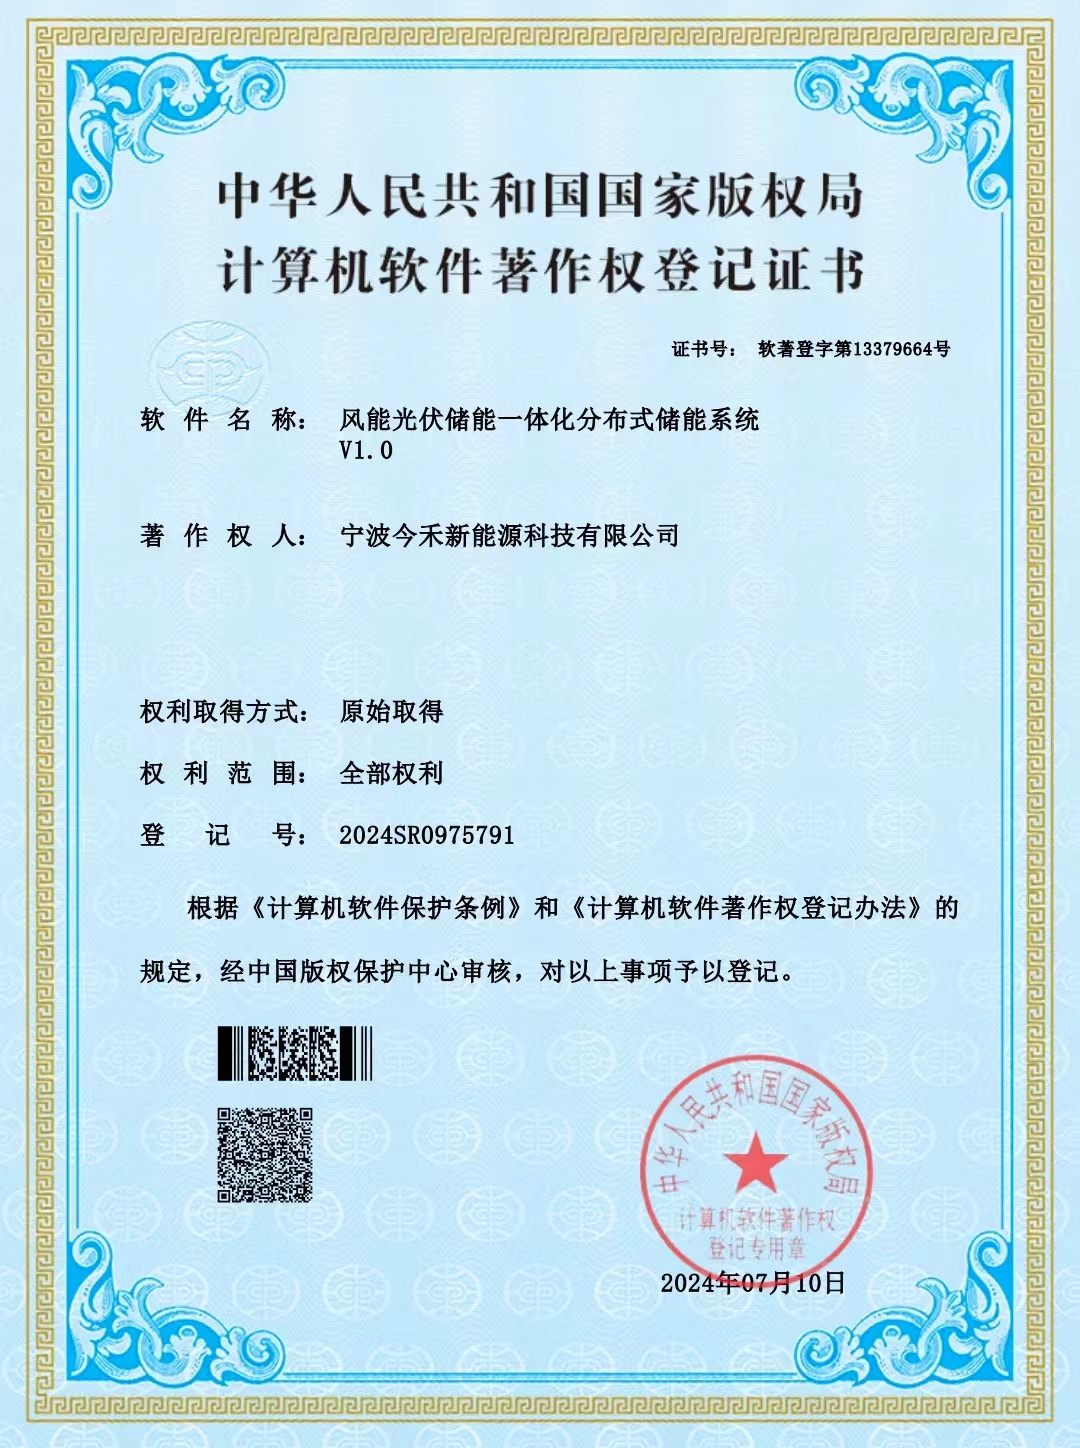 宁波今禾新能源科技有限公司，两项软件著作权获得国家版权局审核通过，并颁发登记证书。